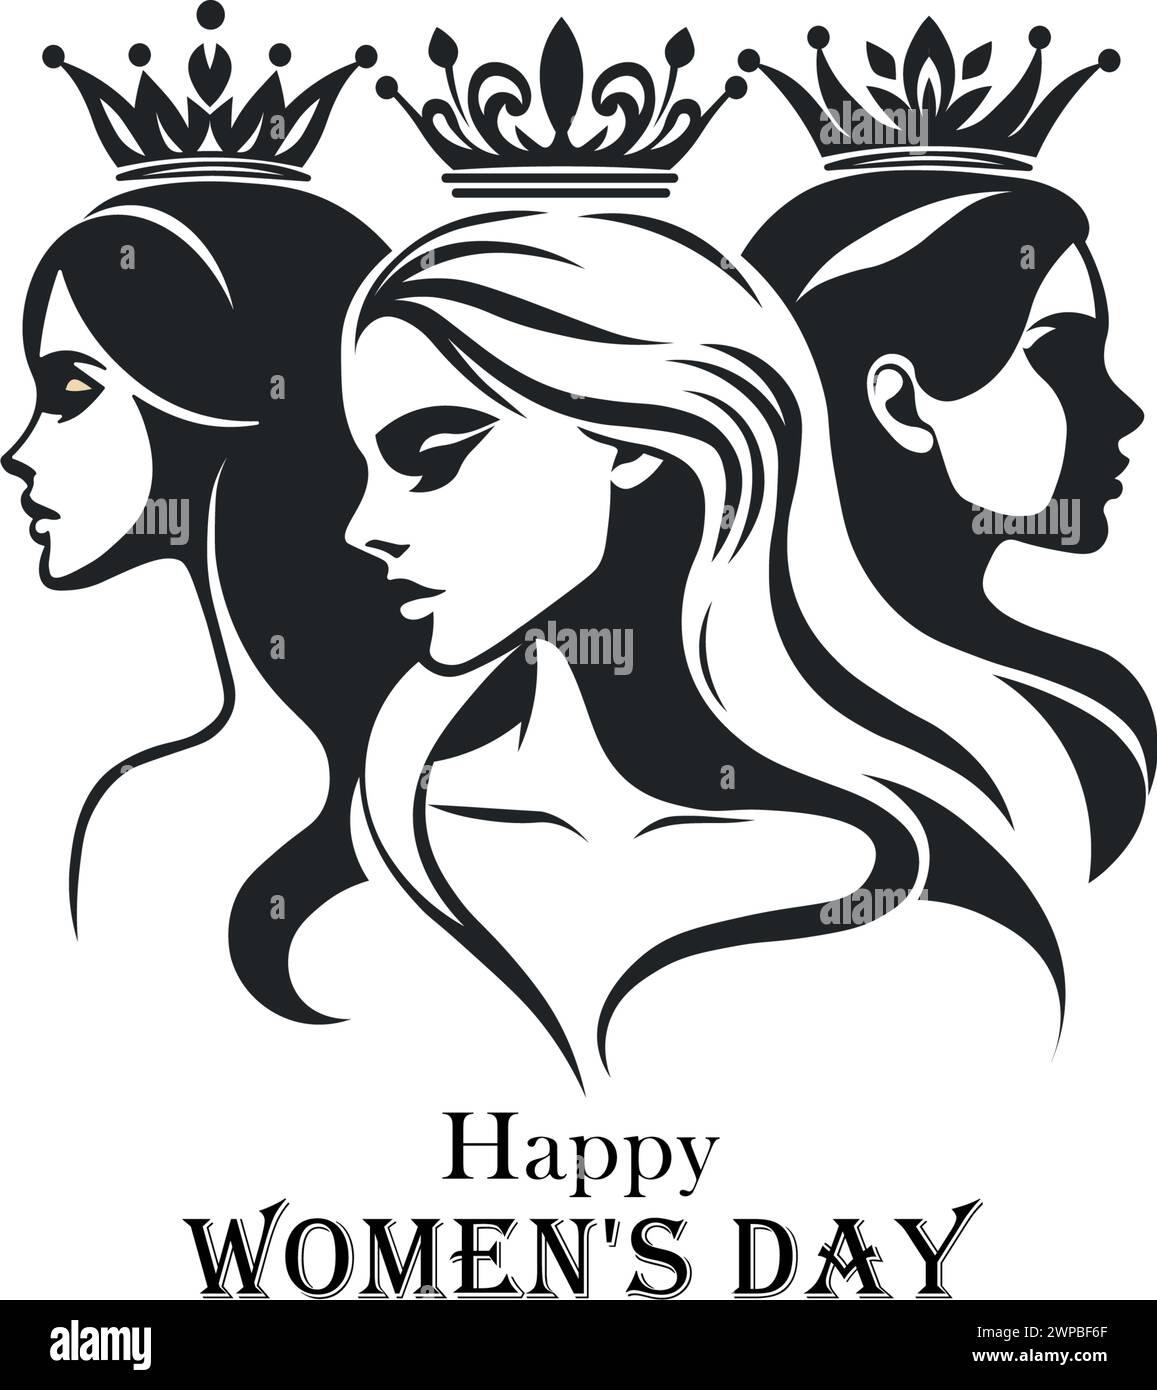 Auffällige Schwarz-weiß-Illustration, die drei Frauen mit Kronen zeigt, symbolisiert Regalität und Stärke mit dem Text Happy WOMEN's DAY, der einen ehrt Stock Vektor